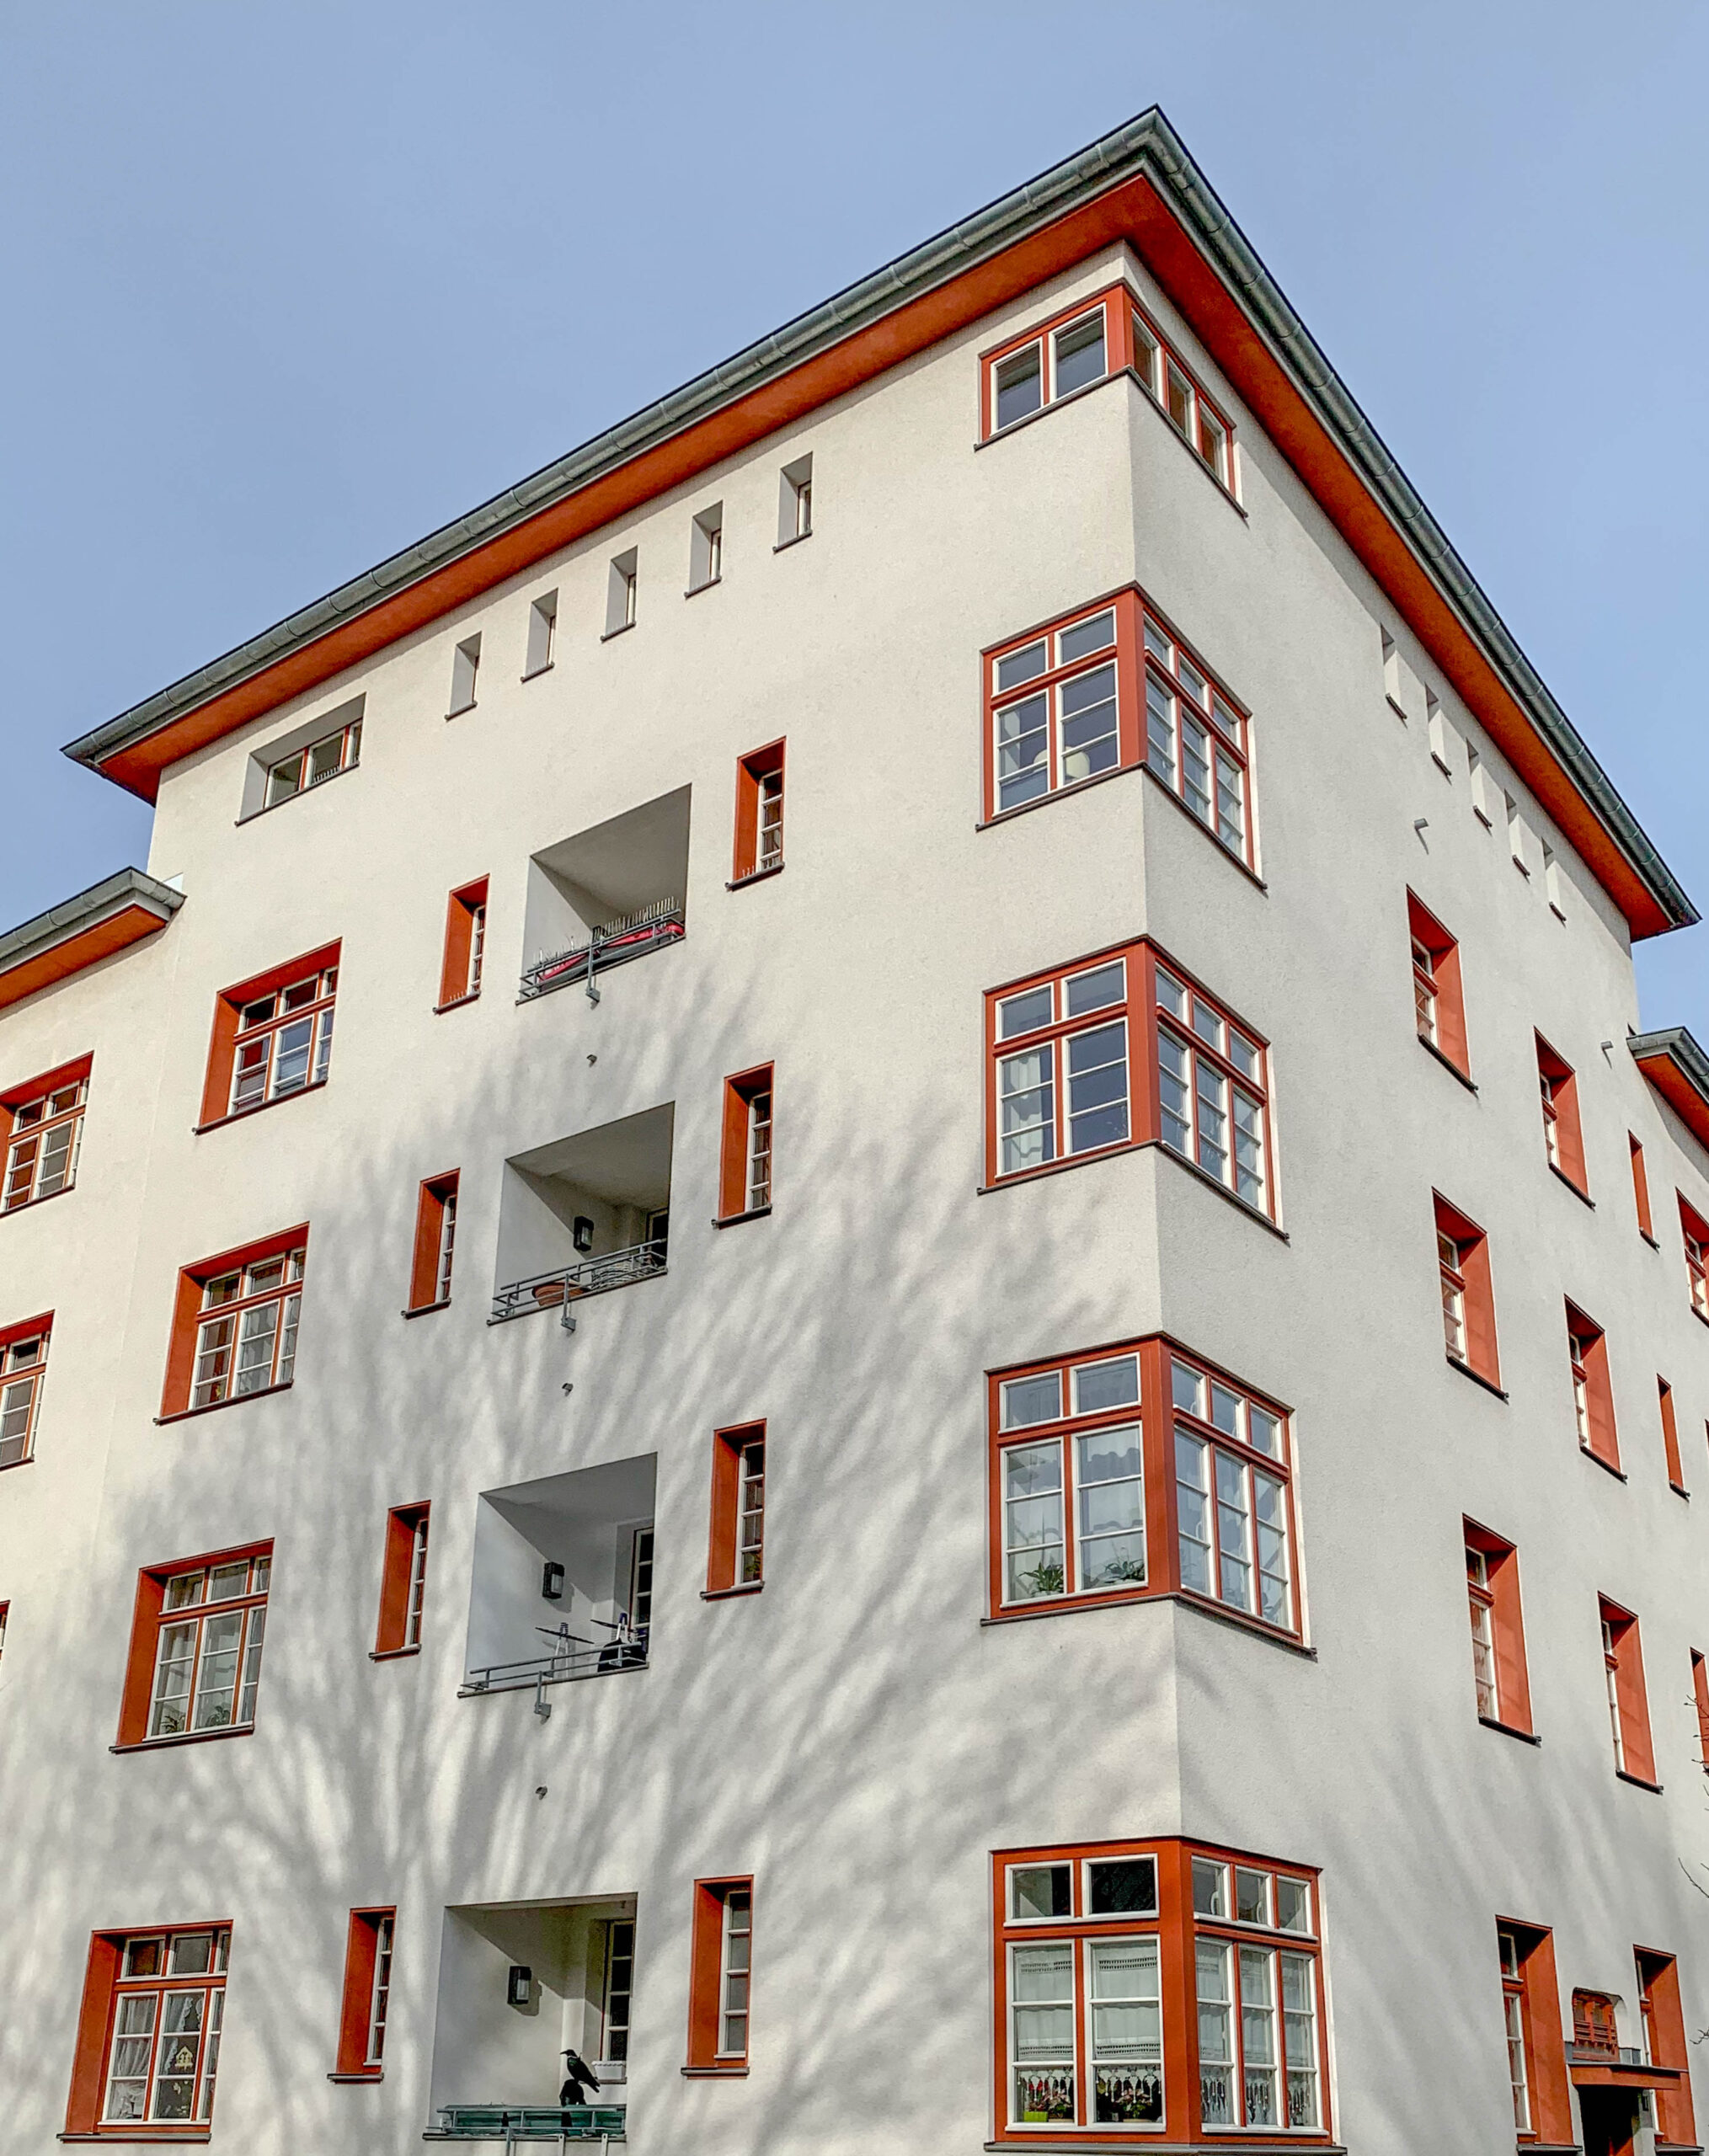 Naumann Housing Estate, 1927-1929. Architects: Manfred Faber, Otto Scheib, Fritz Fuß, Hans Heinz Lüttgen. Photo: Daniela Christmann